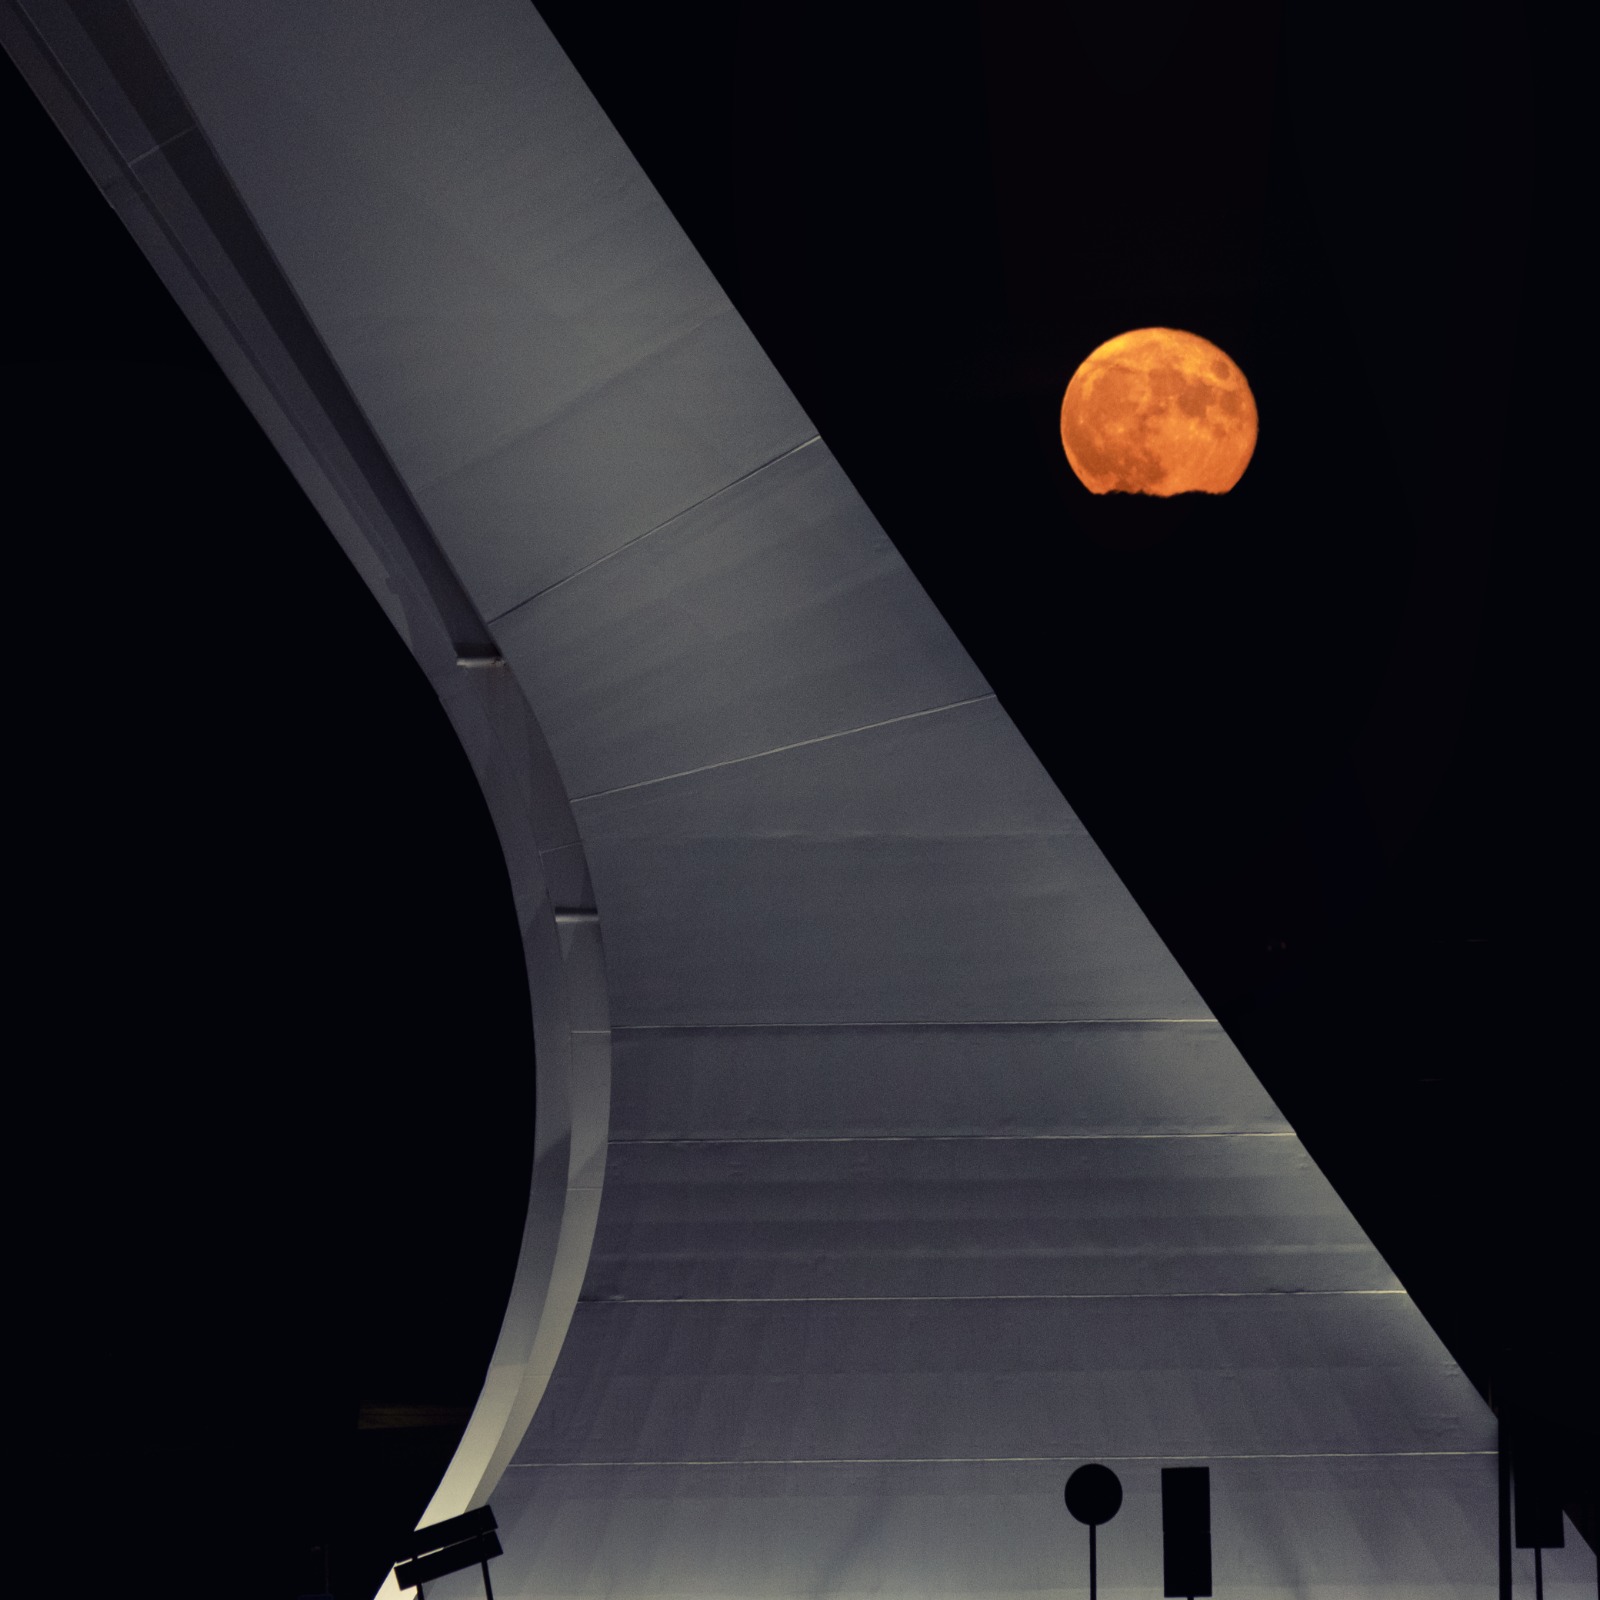 La luna ed il ponte...